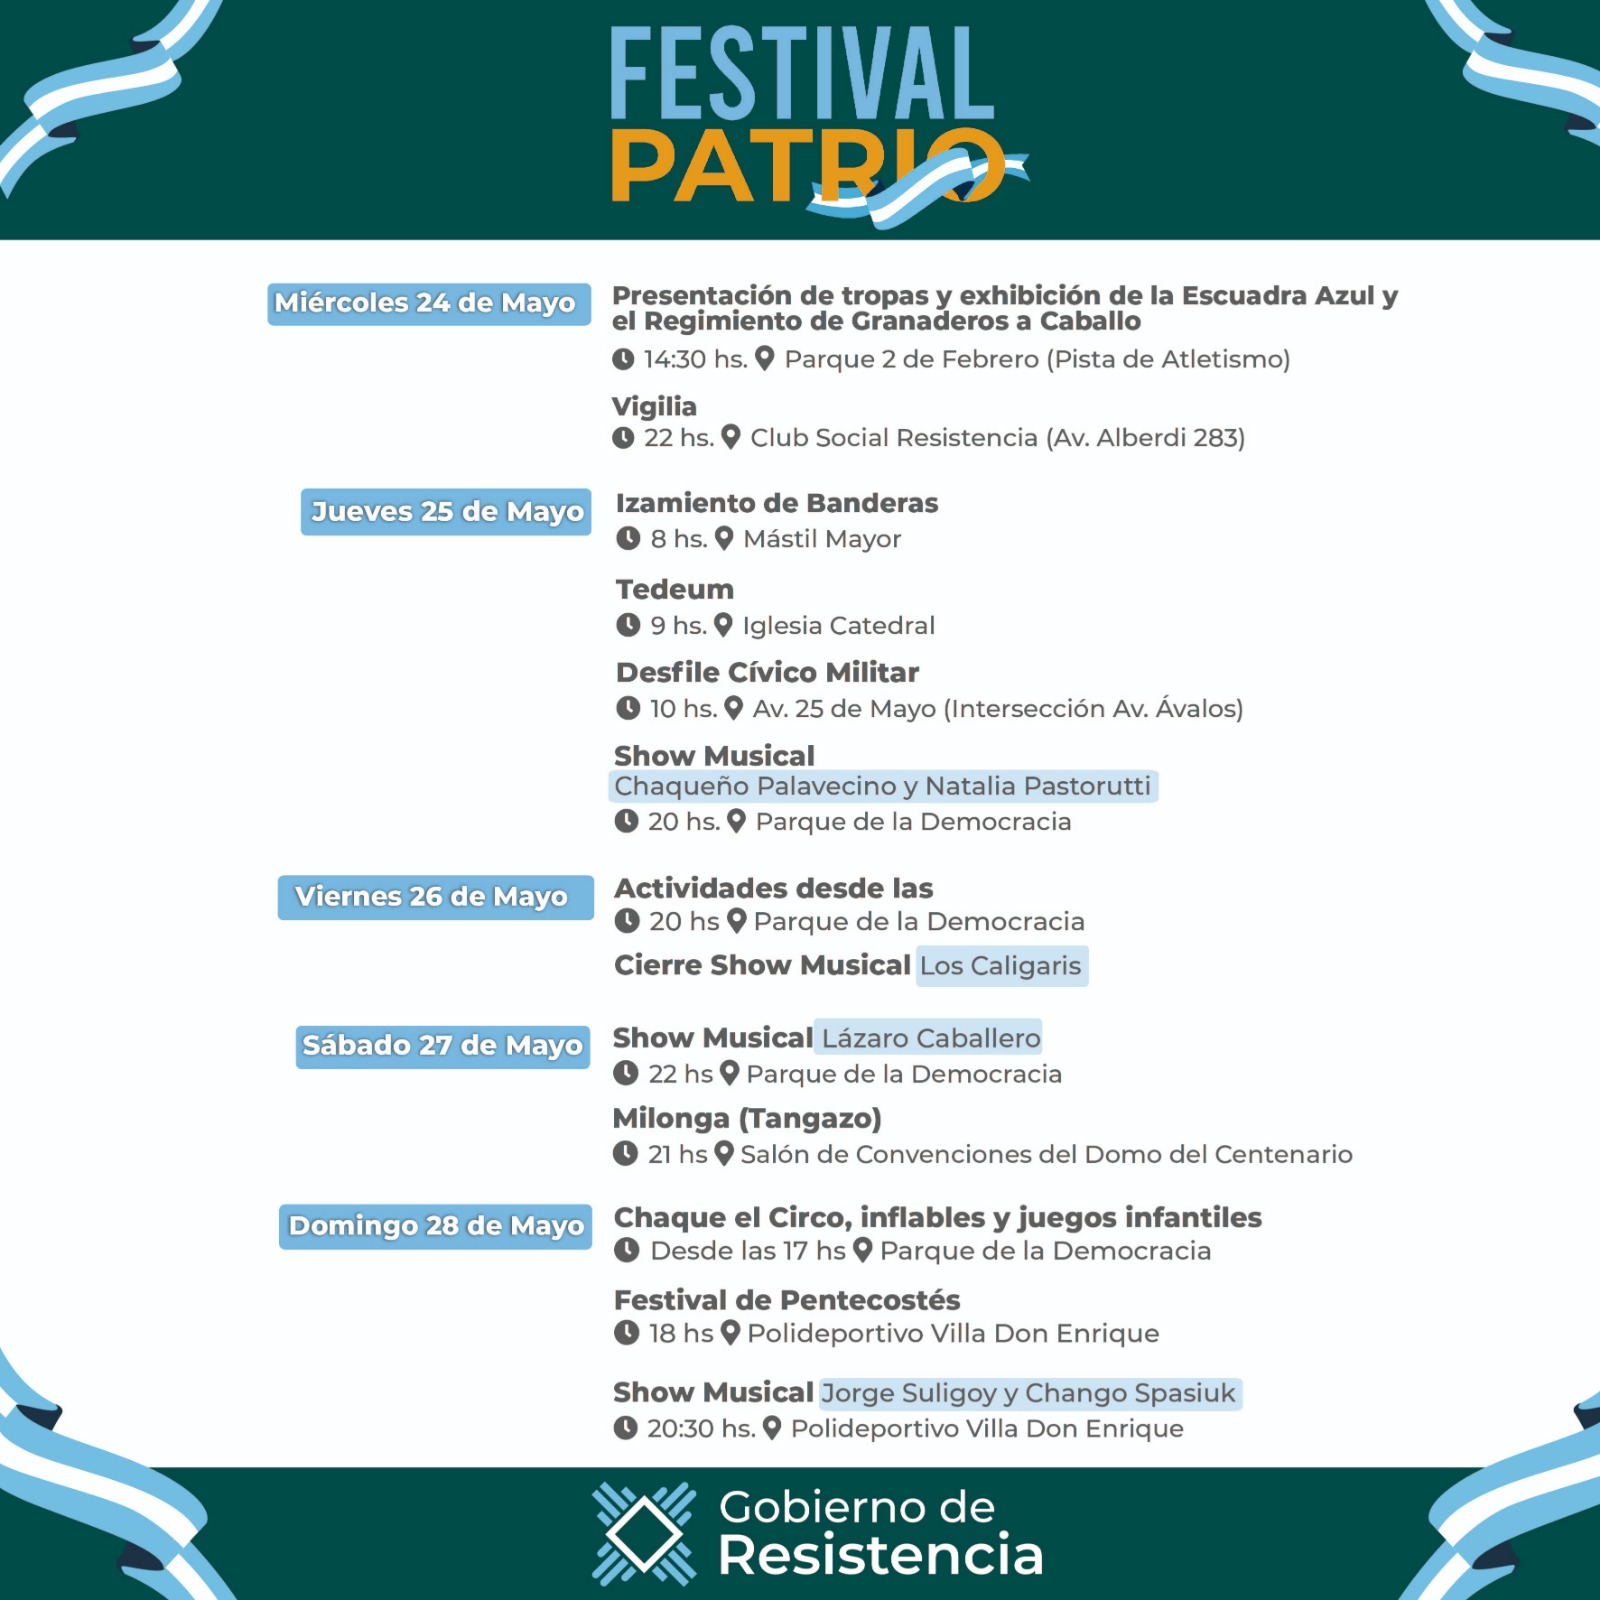 Festival Patrio: El Chaqueño Palavecino, Natalia Pastorutti y Los Caligaris llegan a Resistencia para el finde XXL